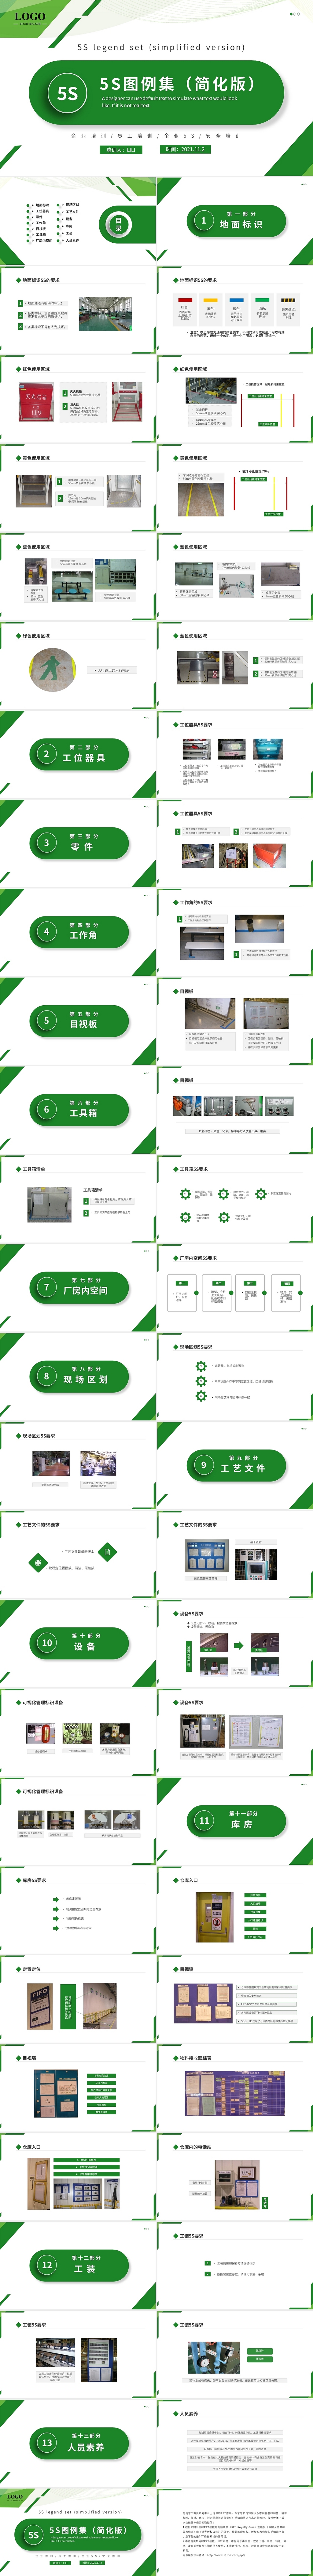 绿色清新简约商务企业5S图例集简化版培训PP